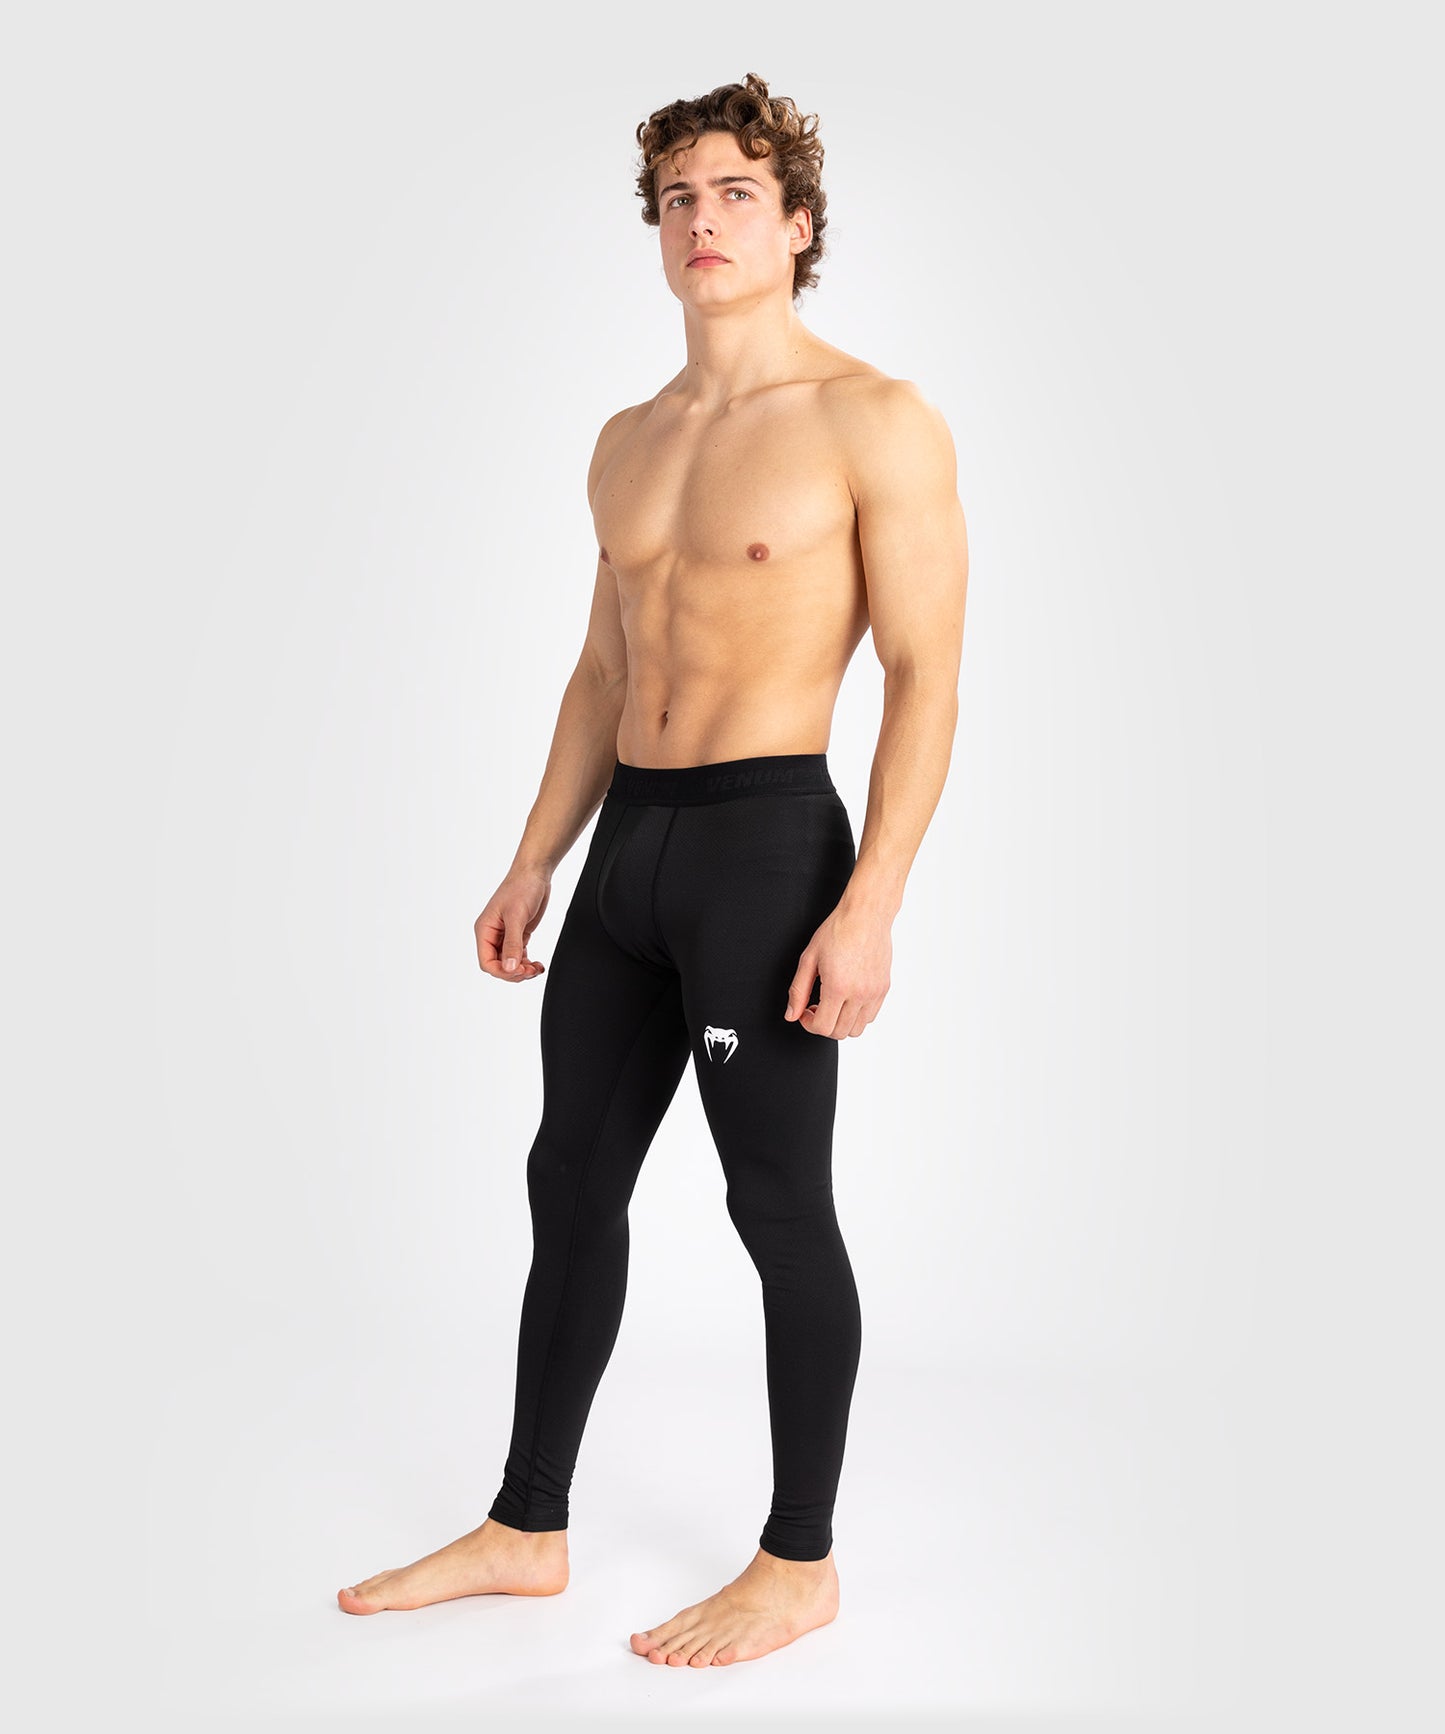 Pantalon de compression pour hommes Venum Contender - Noir/Blanc